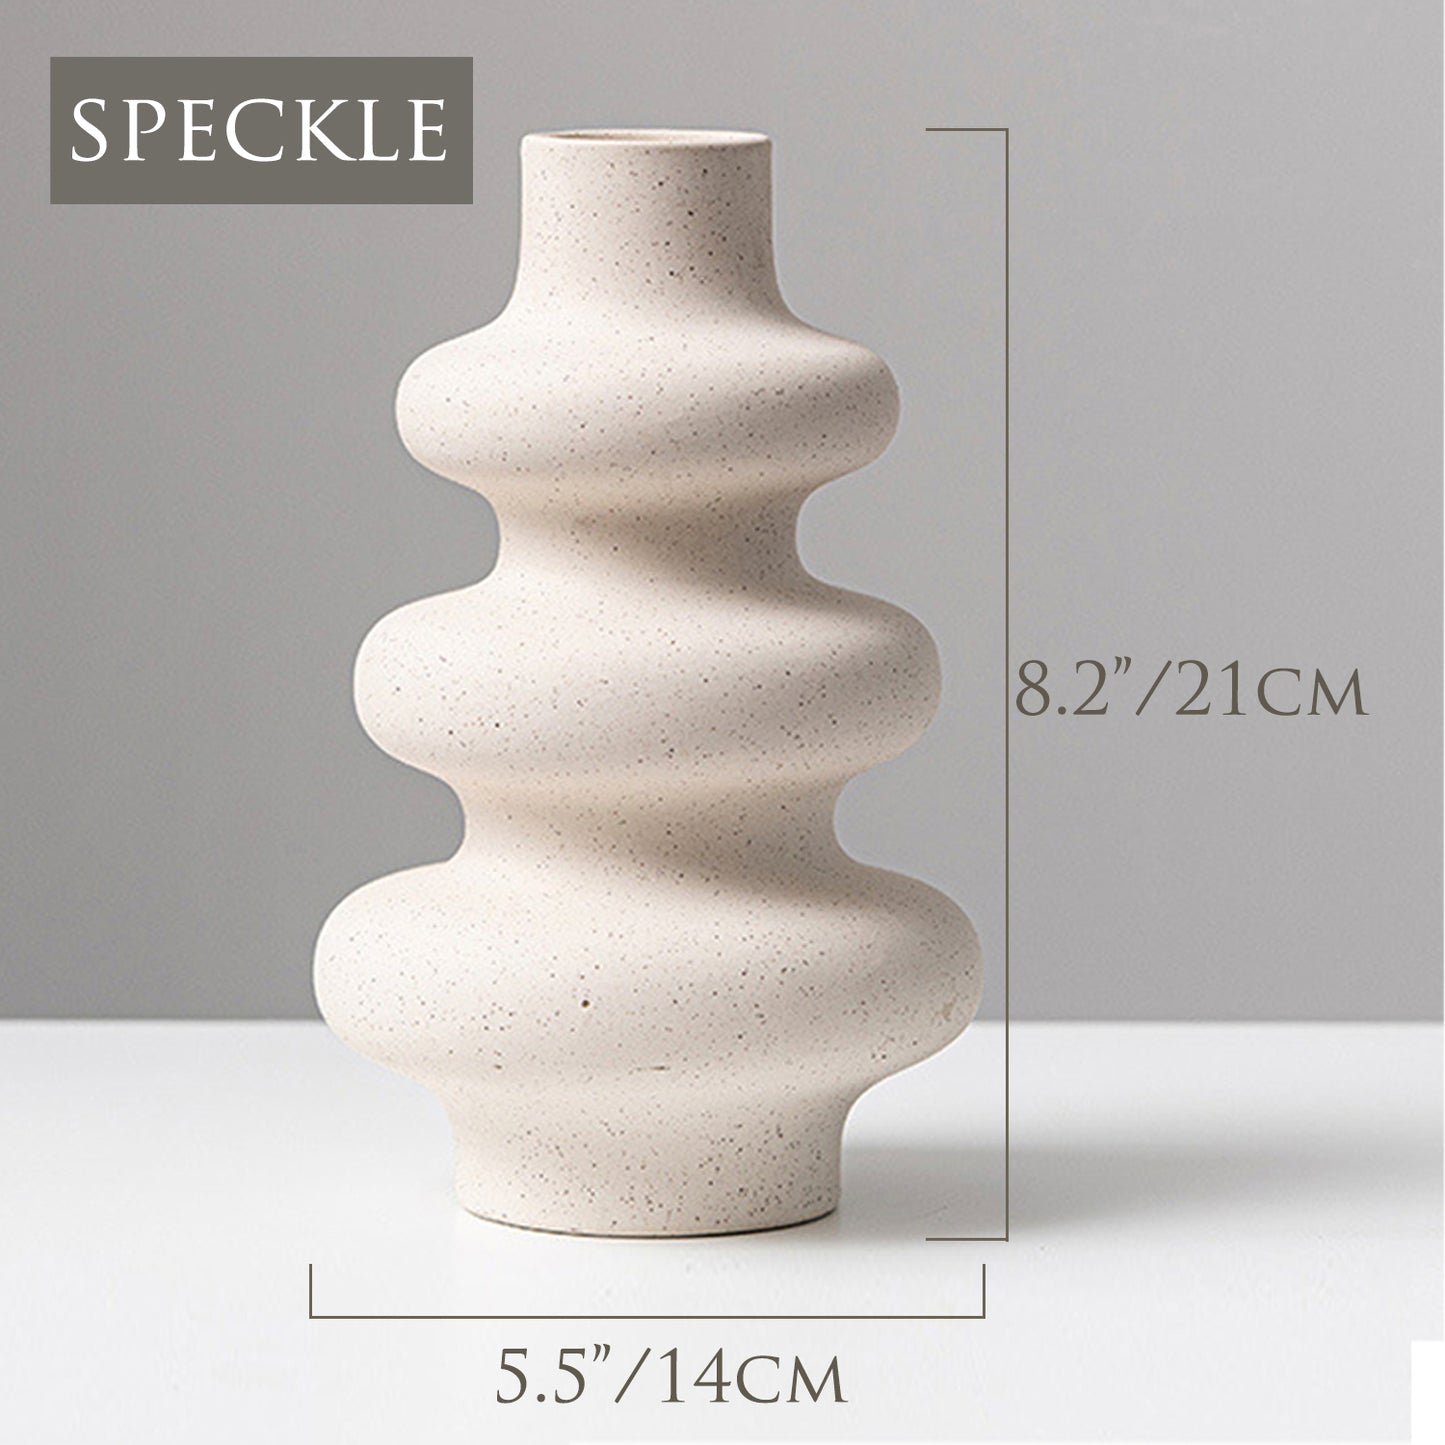 8.3" Ceramic Geometric Vase